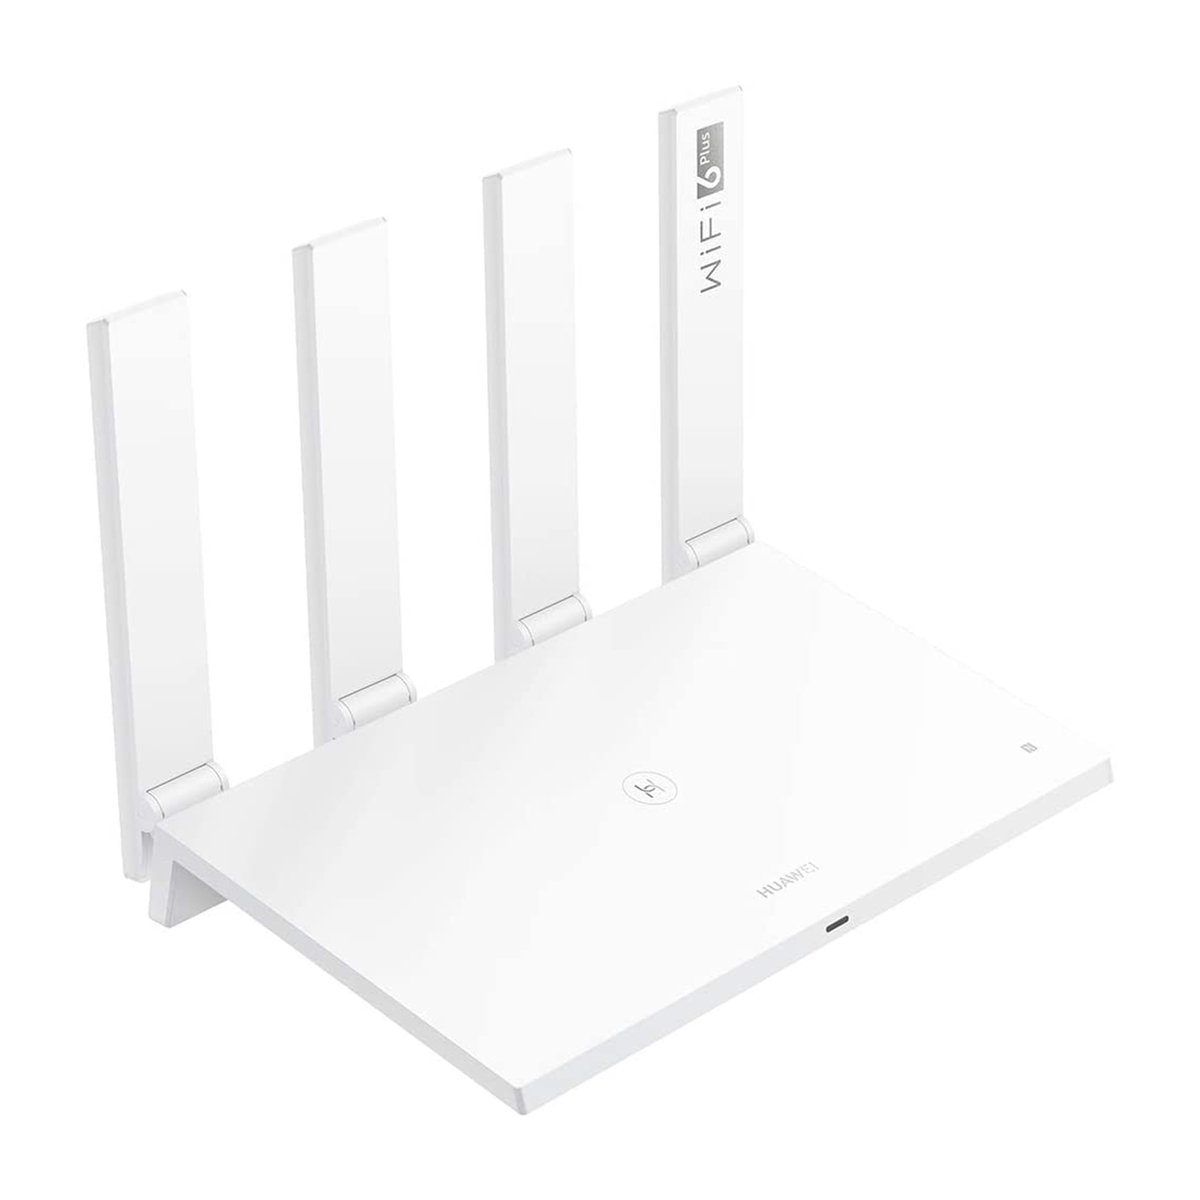 Huawei WireLess Router WS7200-20 White